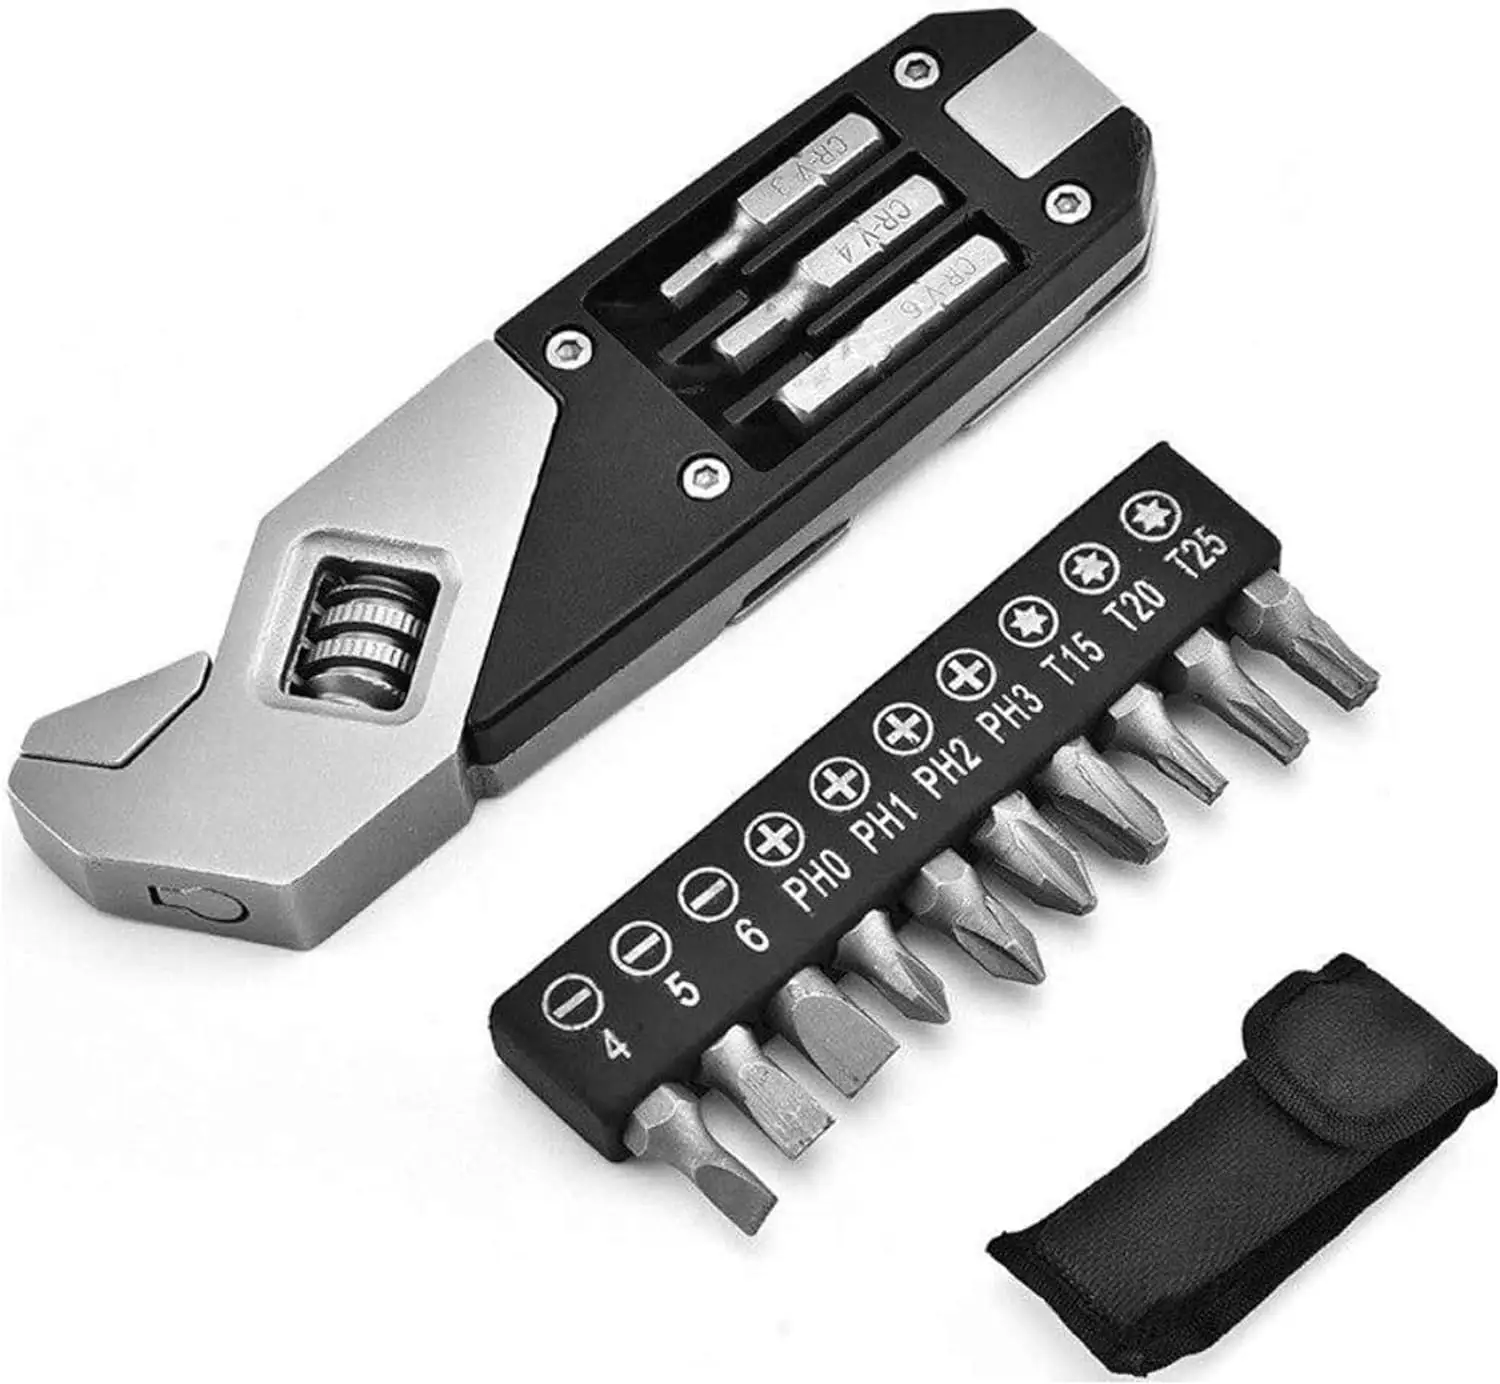 مجموعة مفاتيح سداسية محمولة قابلة للطي مصنوعة من الفولاذ المقاوم للصدأ ومزودة بمقابض ومفك براغي أدوات يدوية للإصلاحات المنزلية